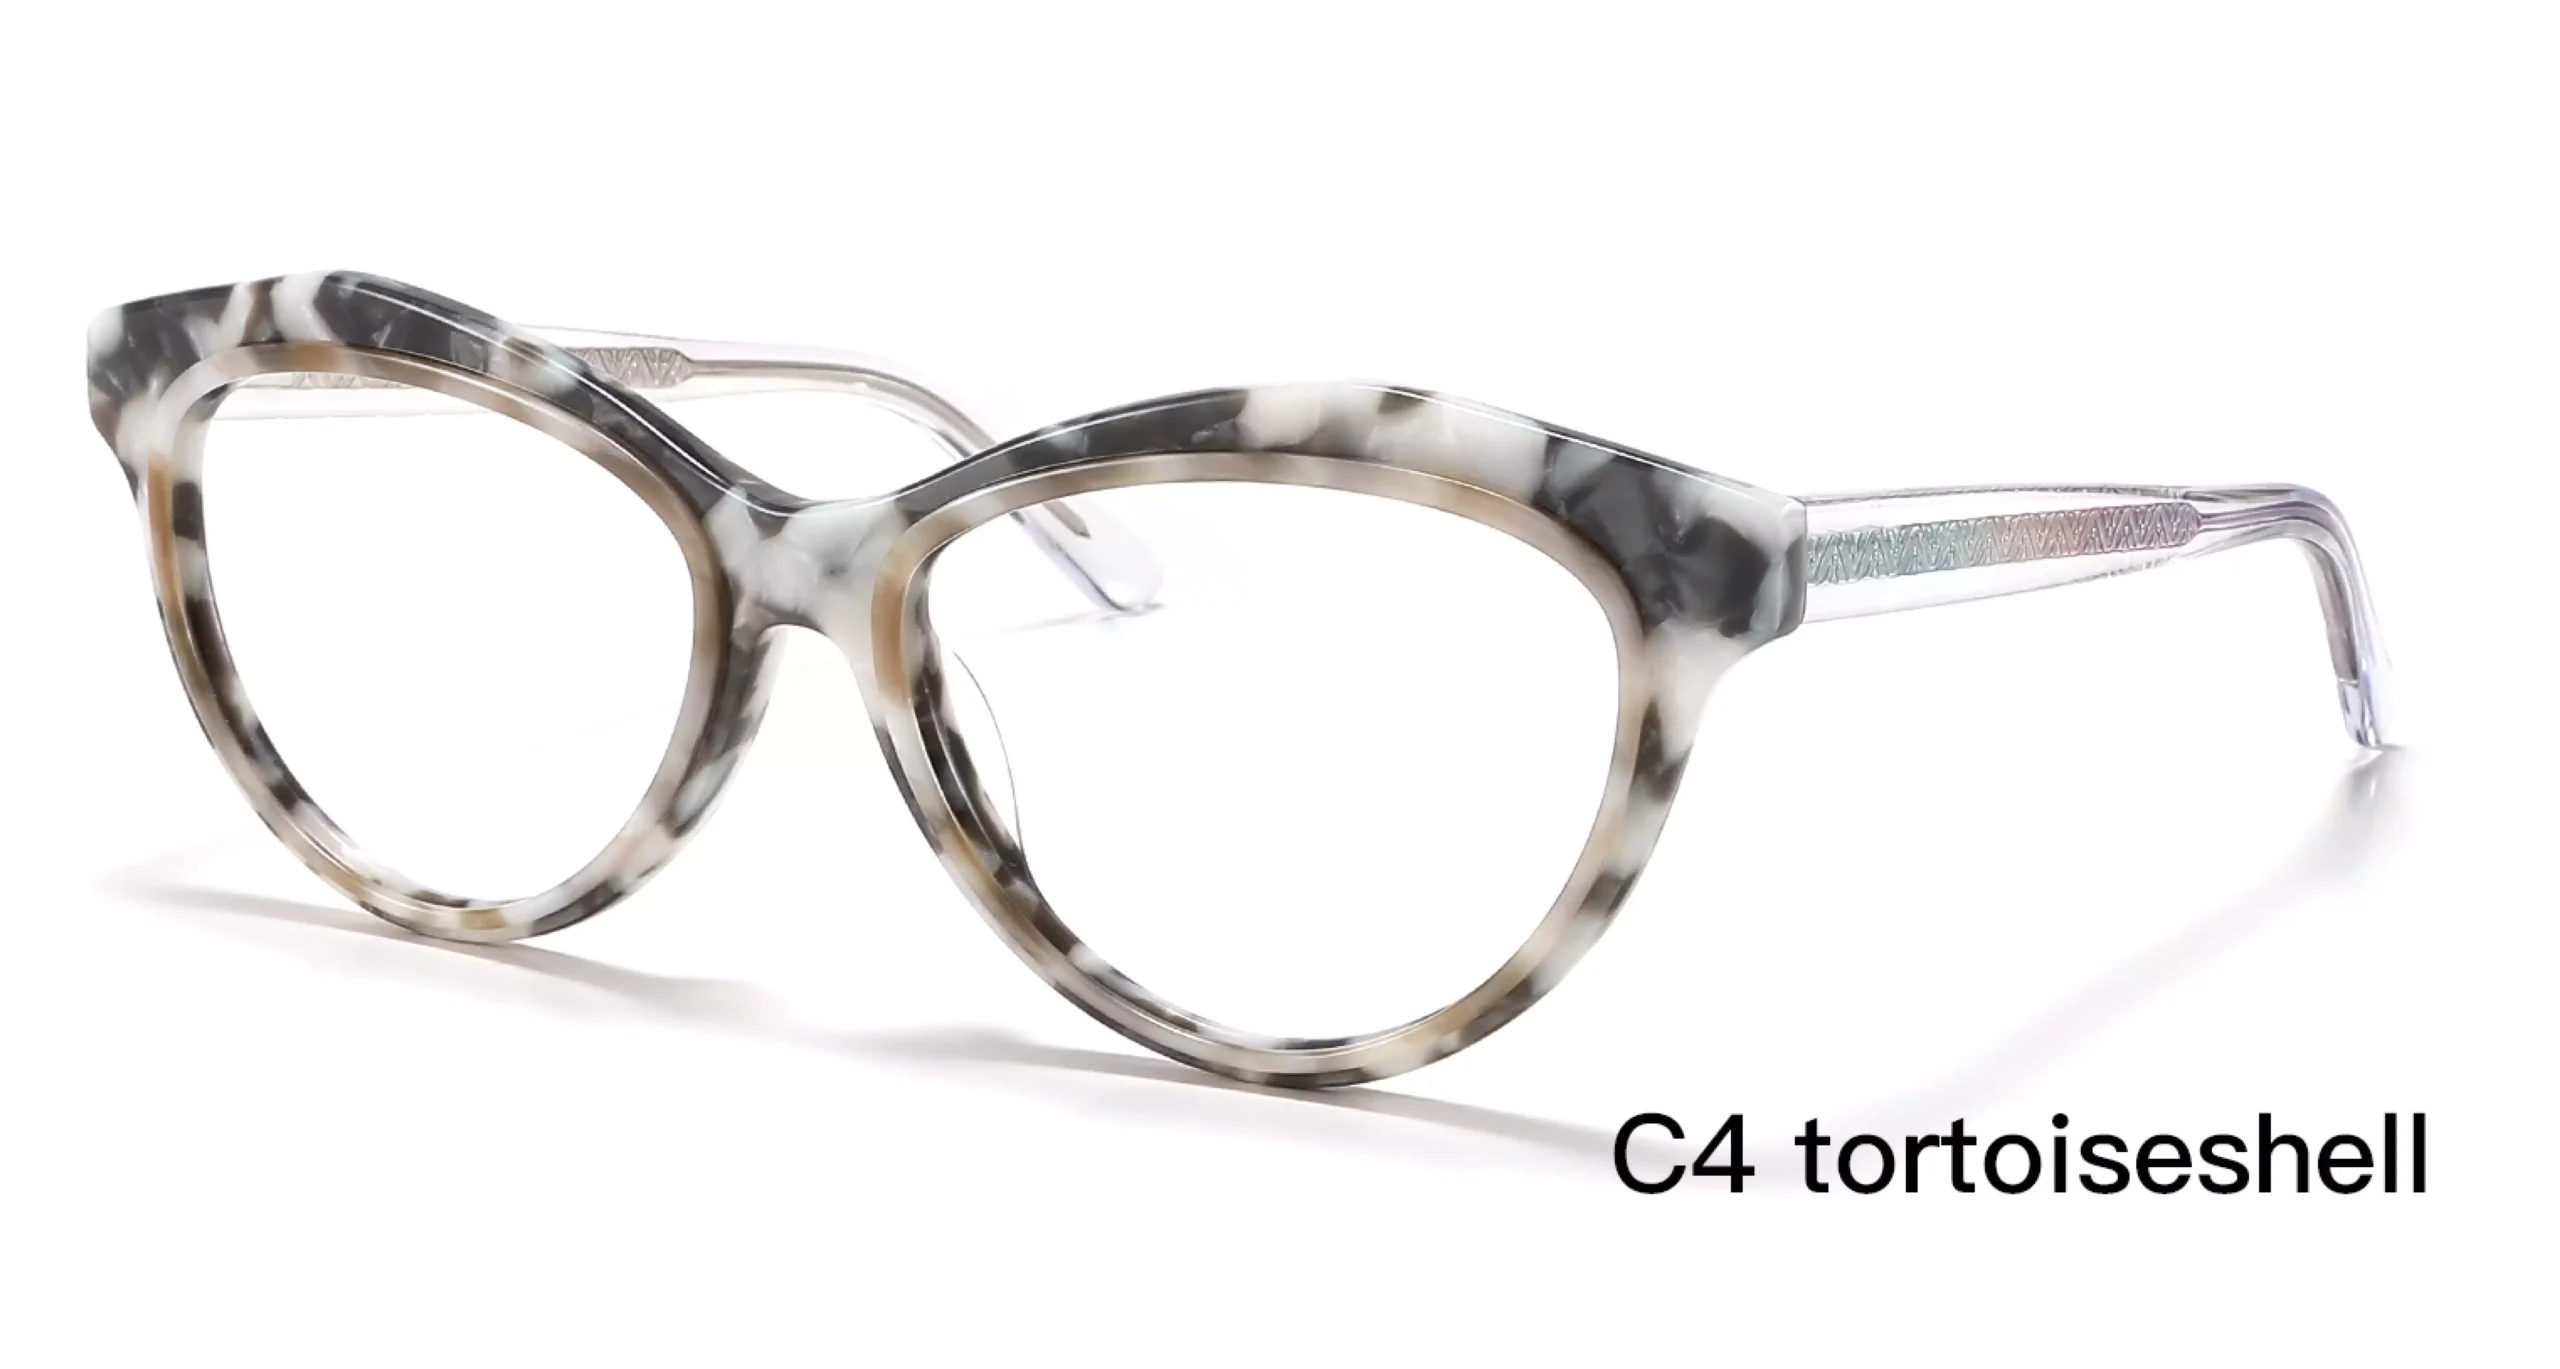 Wholesale, Cat Eye Frames, For Prescription Glasses, Tortoiseshell, Gradient Temple, 45 Degree Display